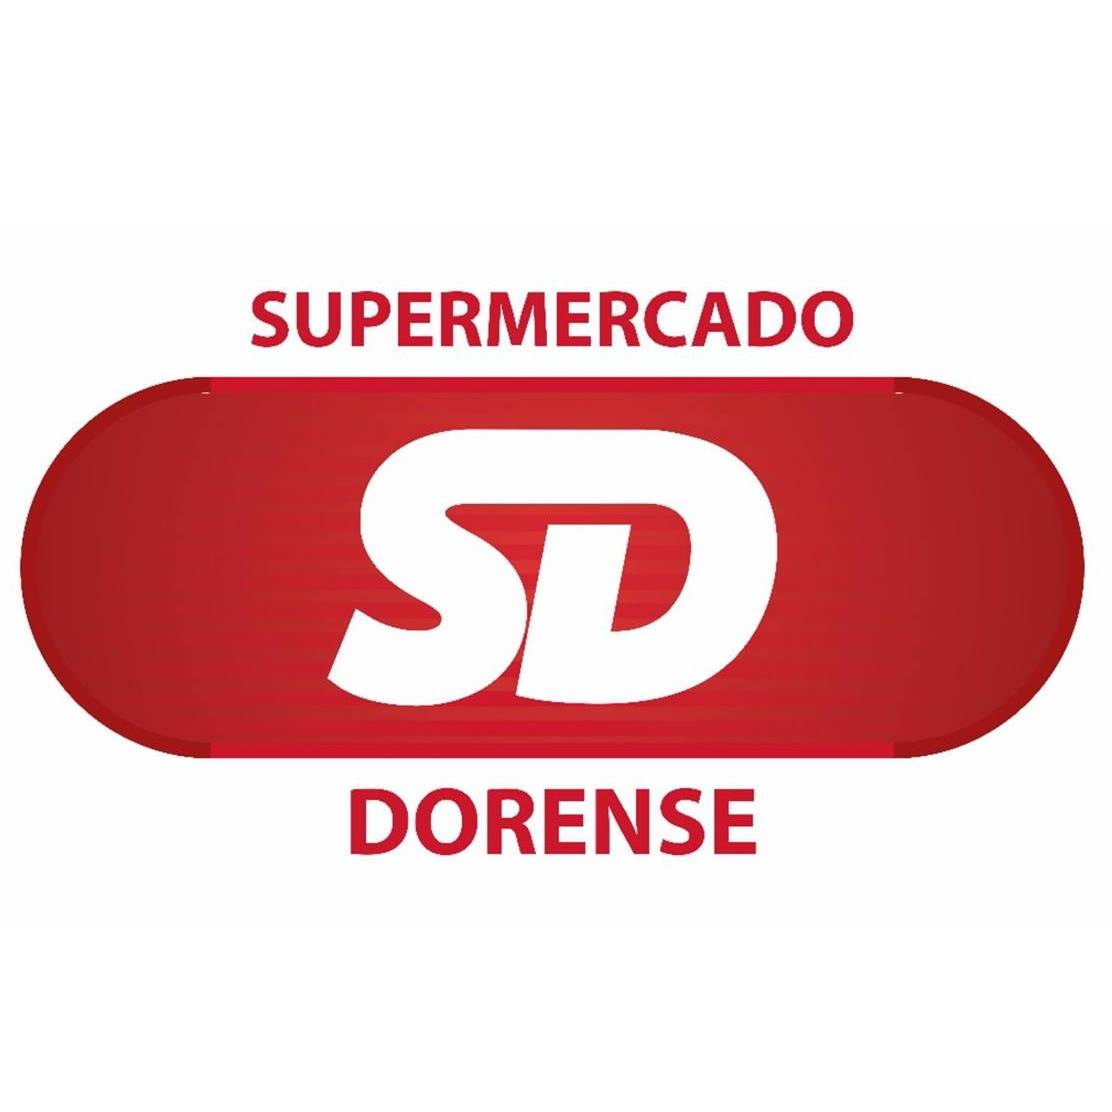 Supermercado Dorense 